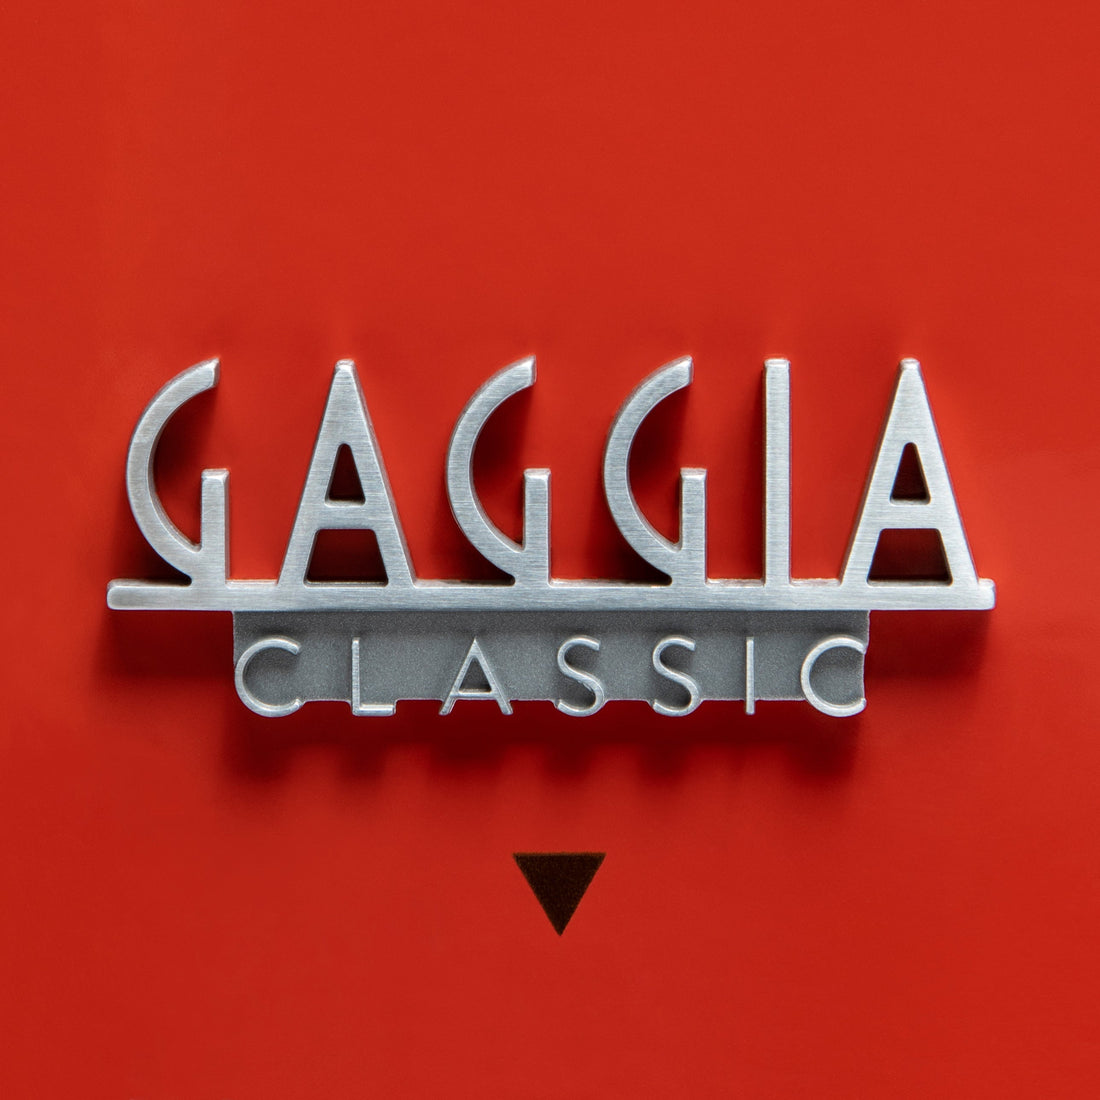 Gaggia Classic Evo Pro Espresso Machine in Lobster Red with Tiger Maple